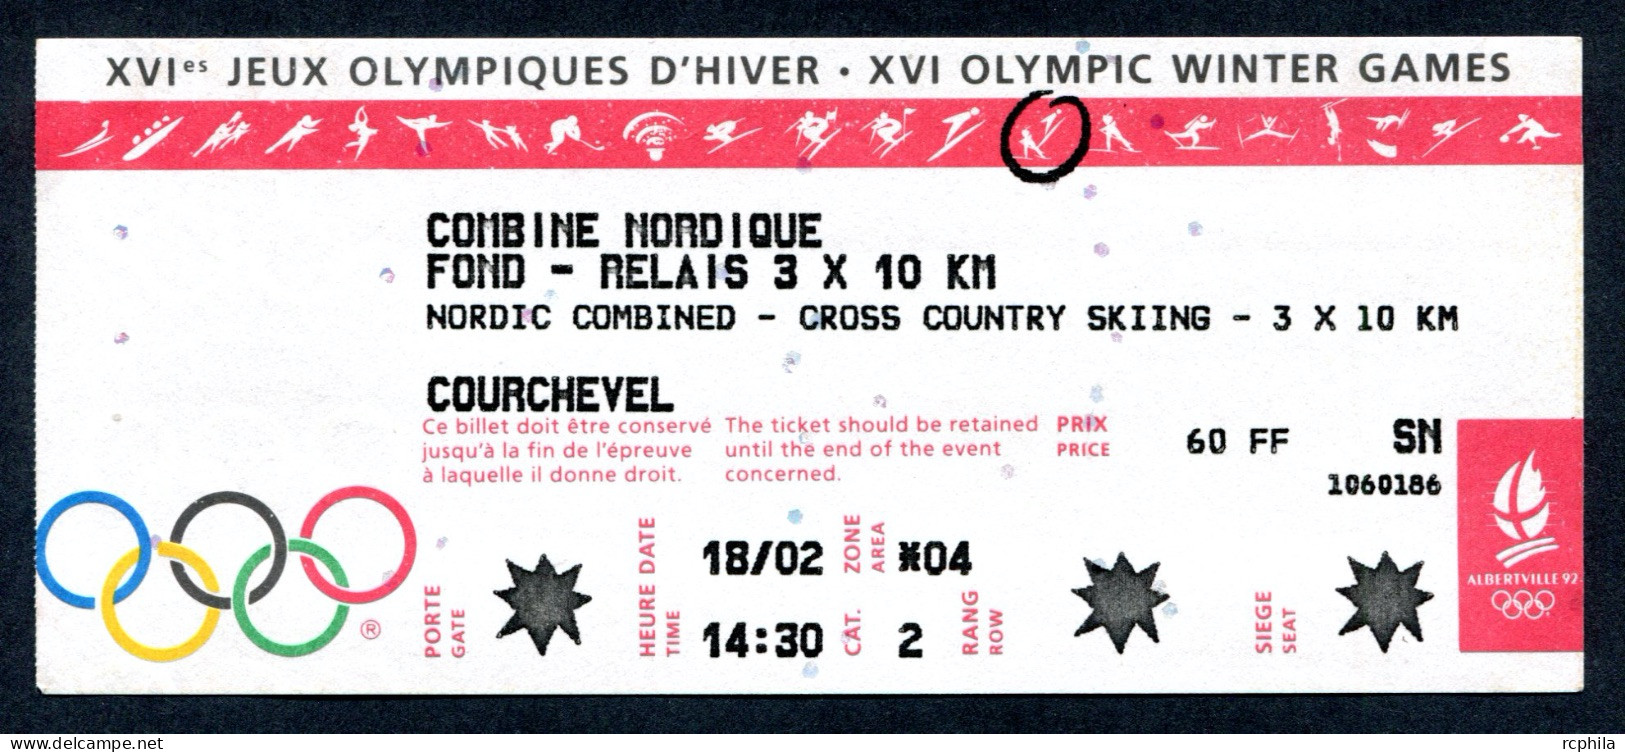 RC 25632 JEUX OLYMPIQUE D ALBERTVILLE 1992 COURCHEVEL BILLET COMBINÉ NORDIQUE SKI DE FOND RELAIS 3 X 10km - Tickets D'entrée